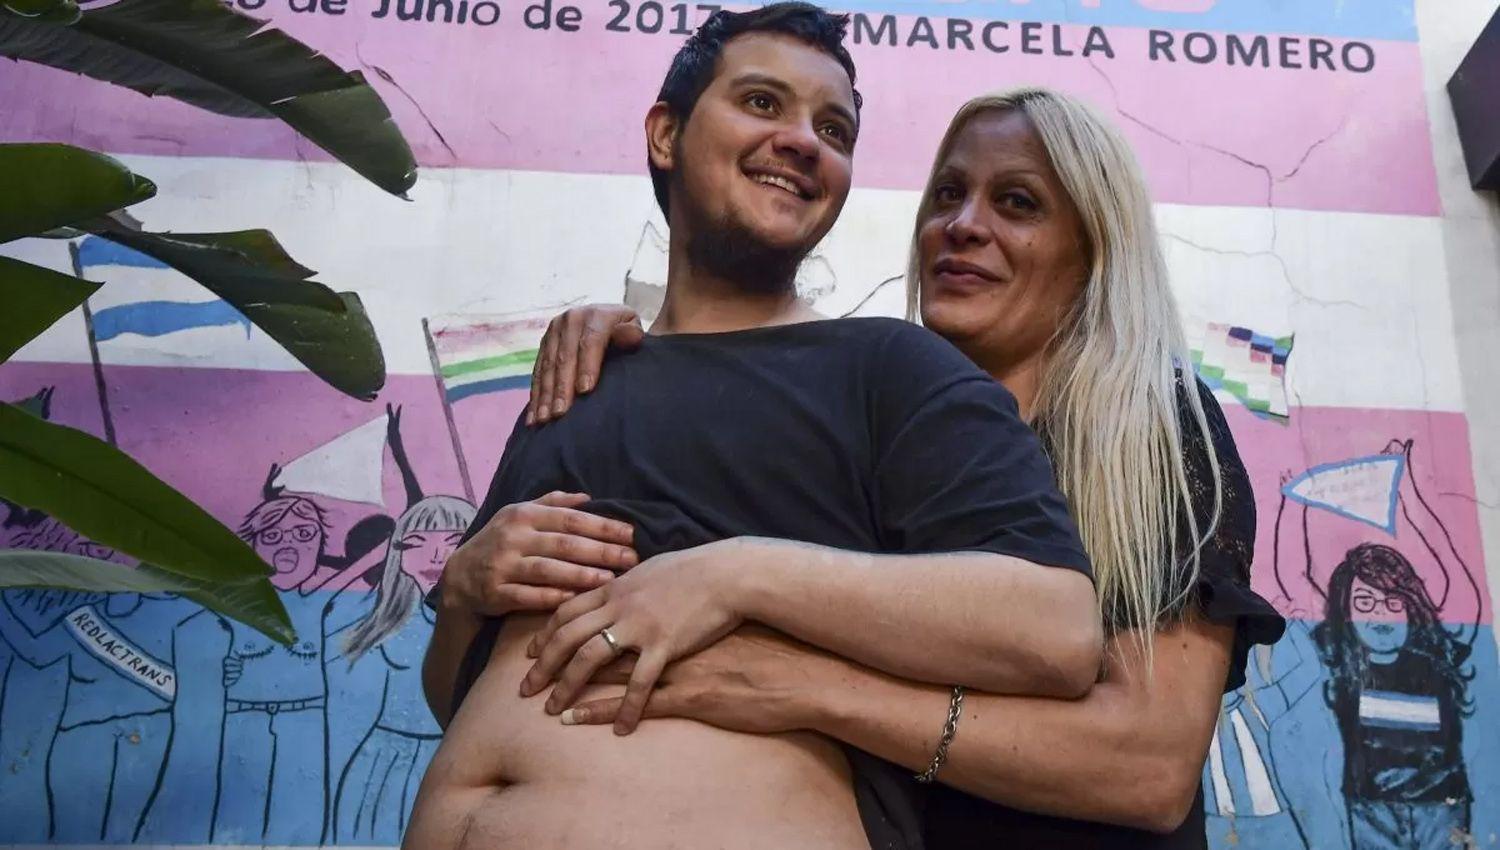 Un varoacuten trans embarazado de cinco meses tendraacute un bebeacute de su pareja una mujer trans